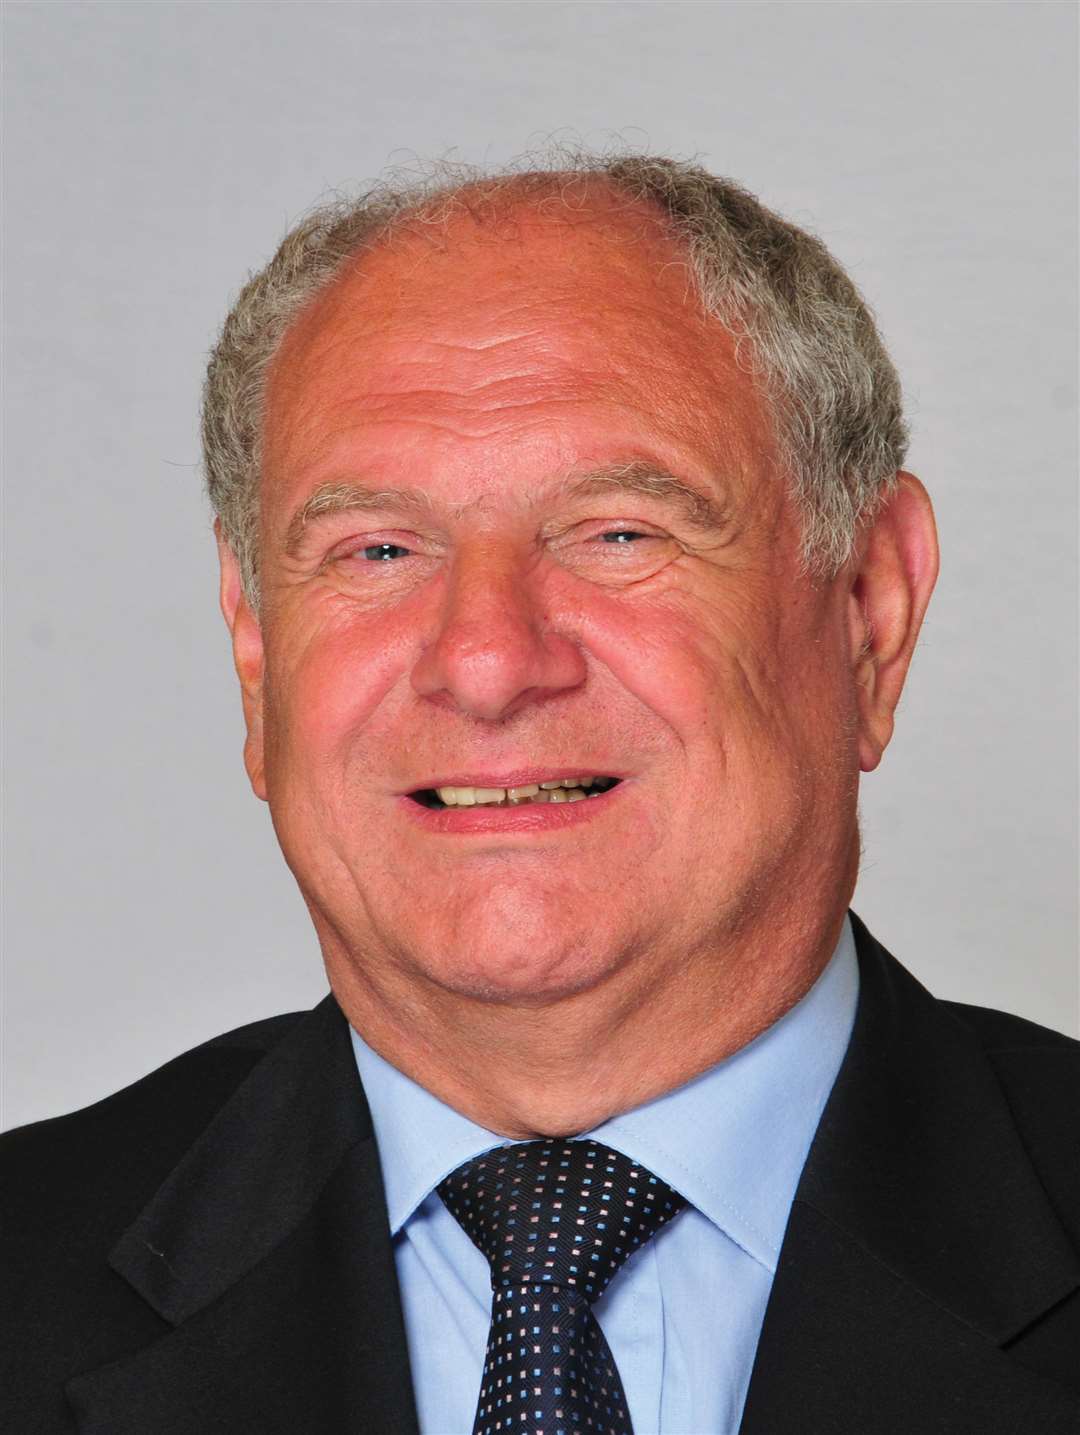 Cllr David Brake, Medway Council's portfolio holder for adult social care